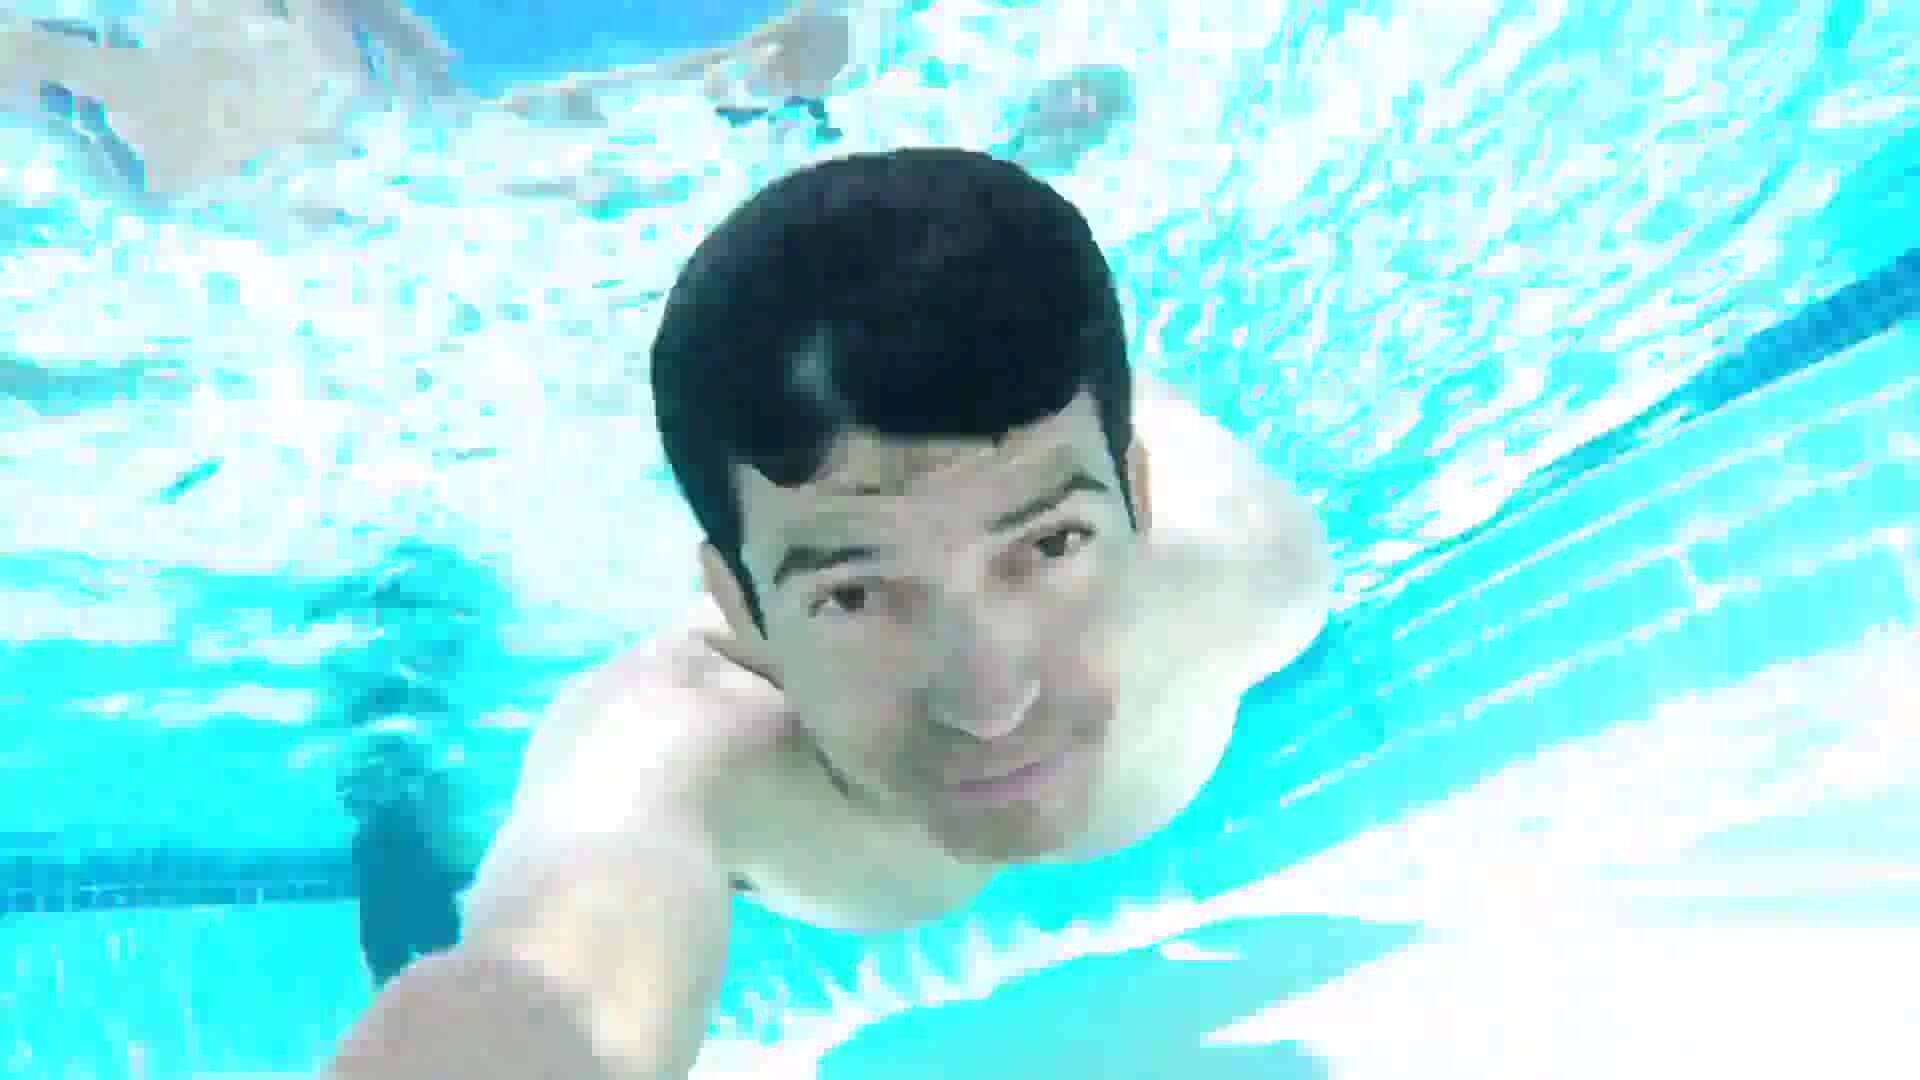 Barefaced cutie underwater in pool